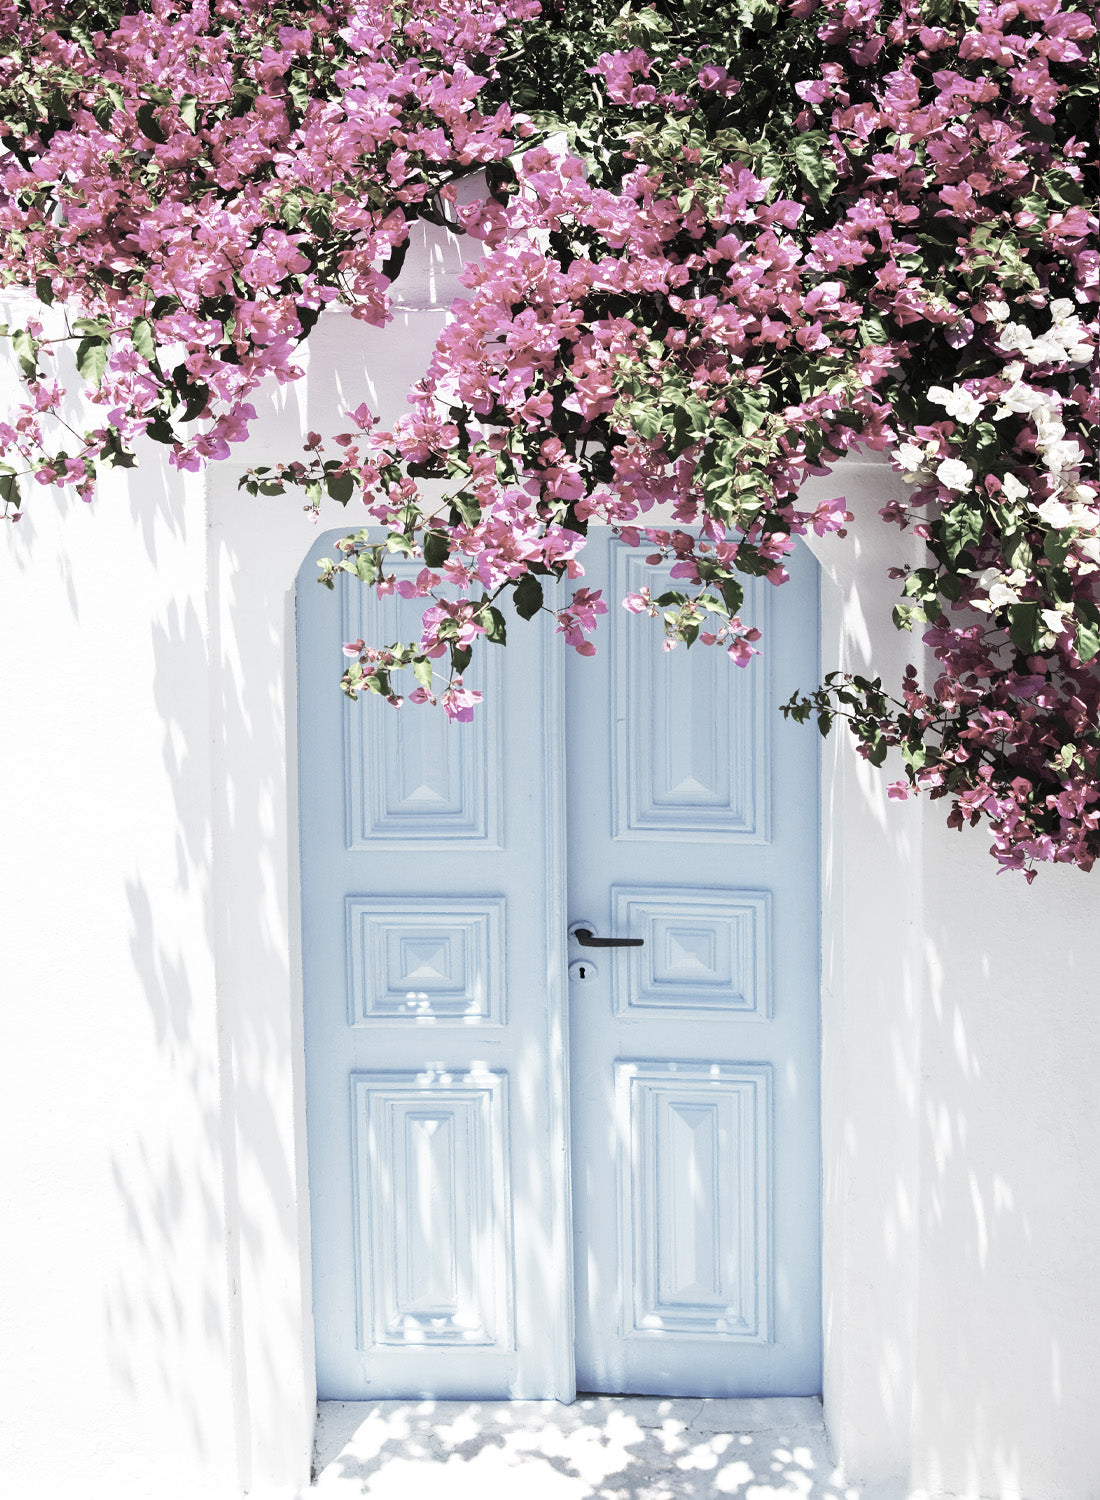 VINTAGE DOOR WITH FLOWERS